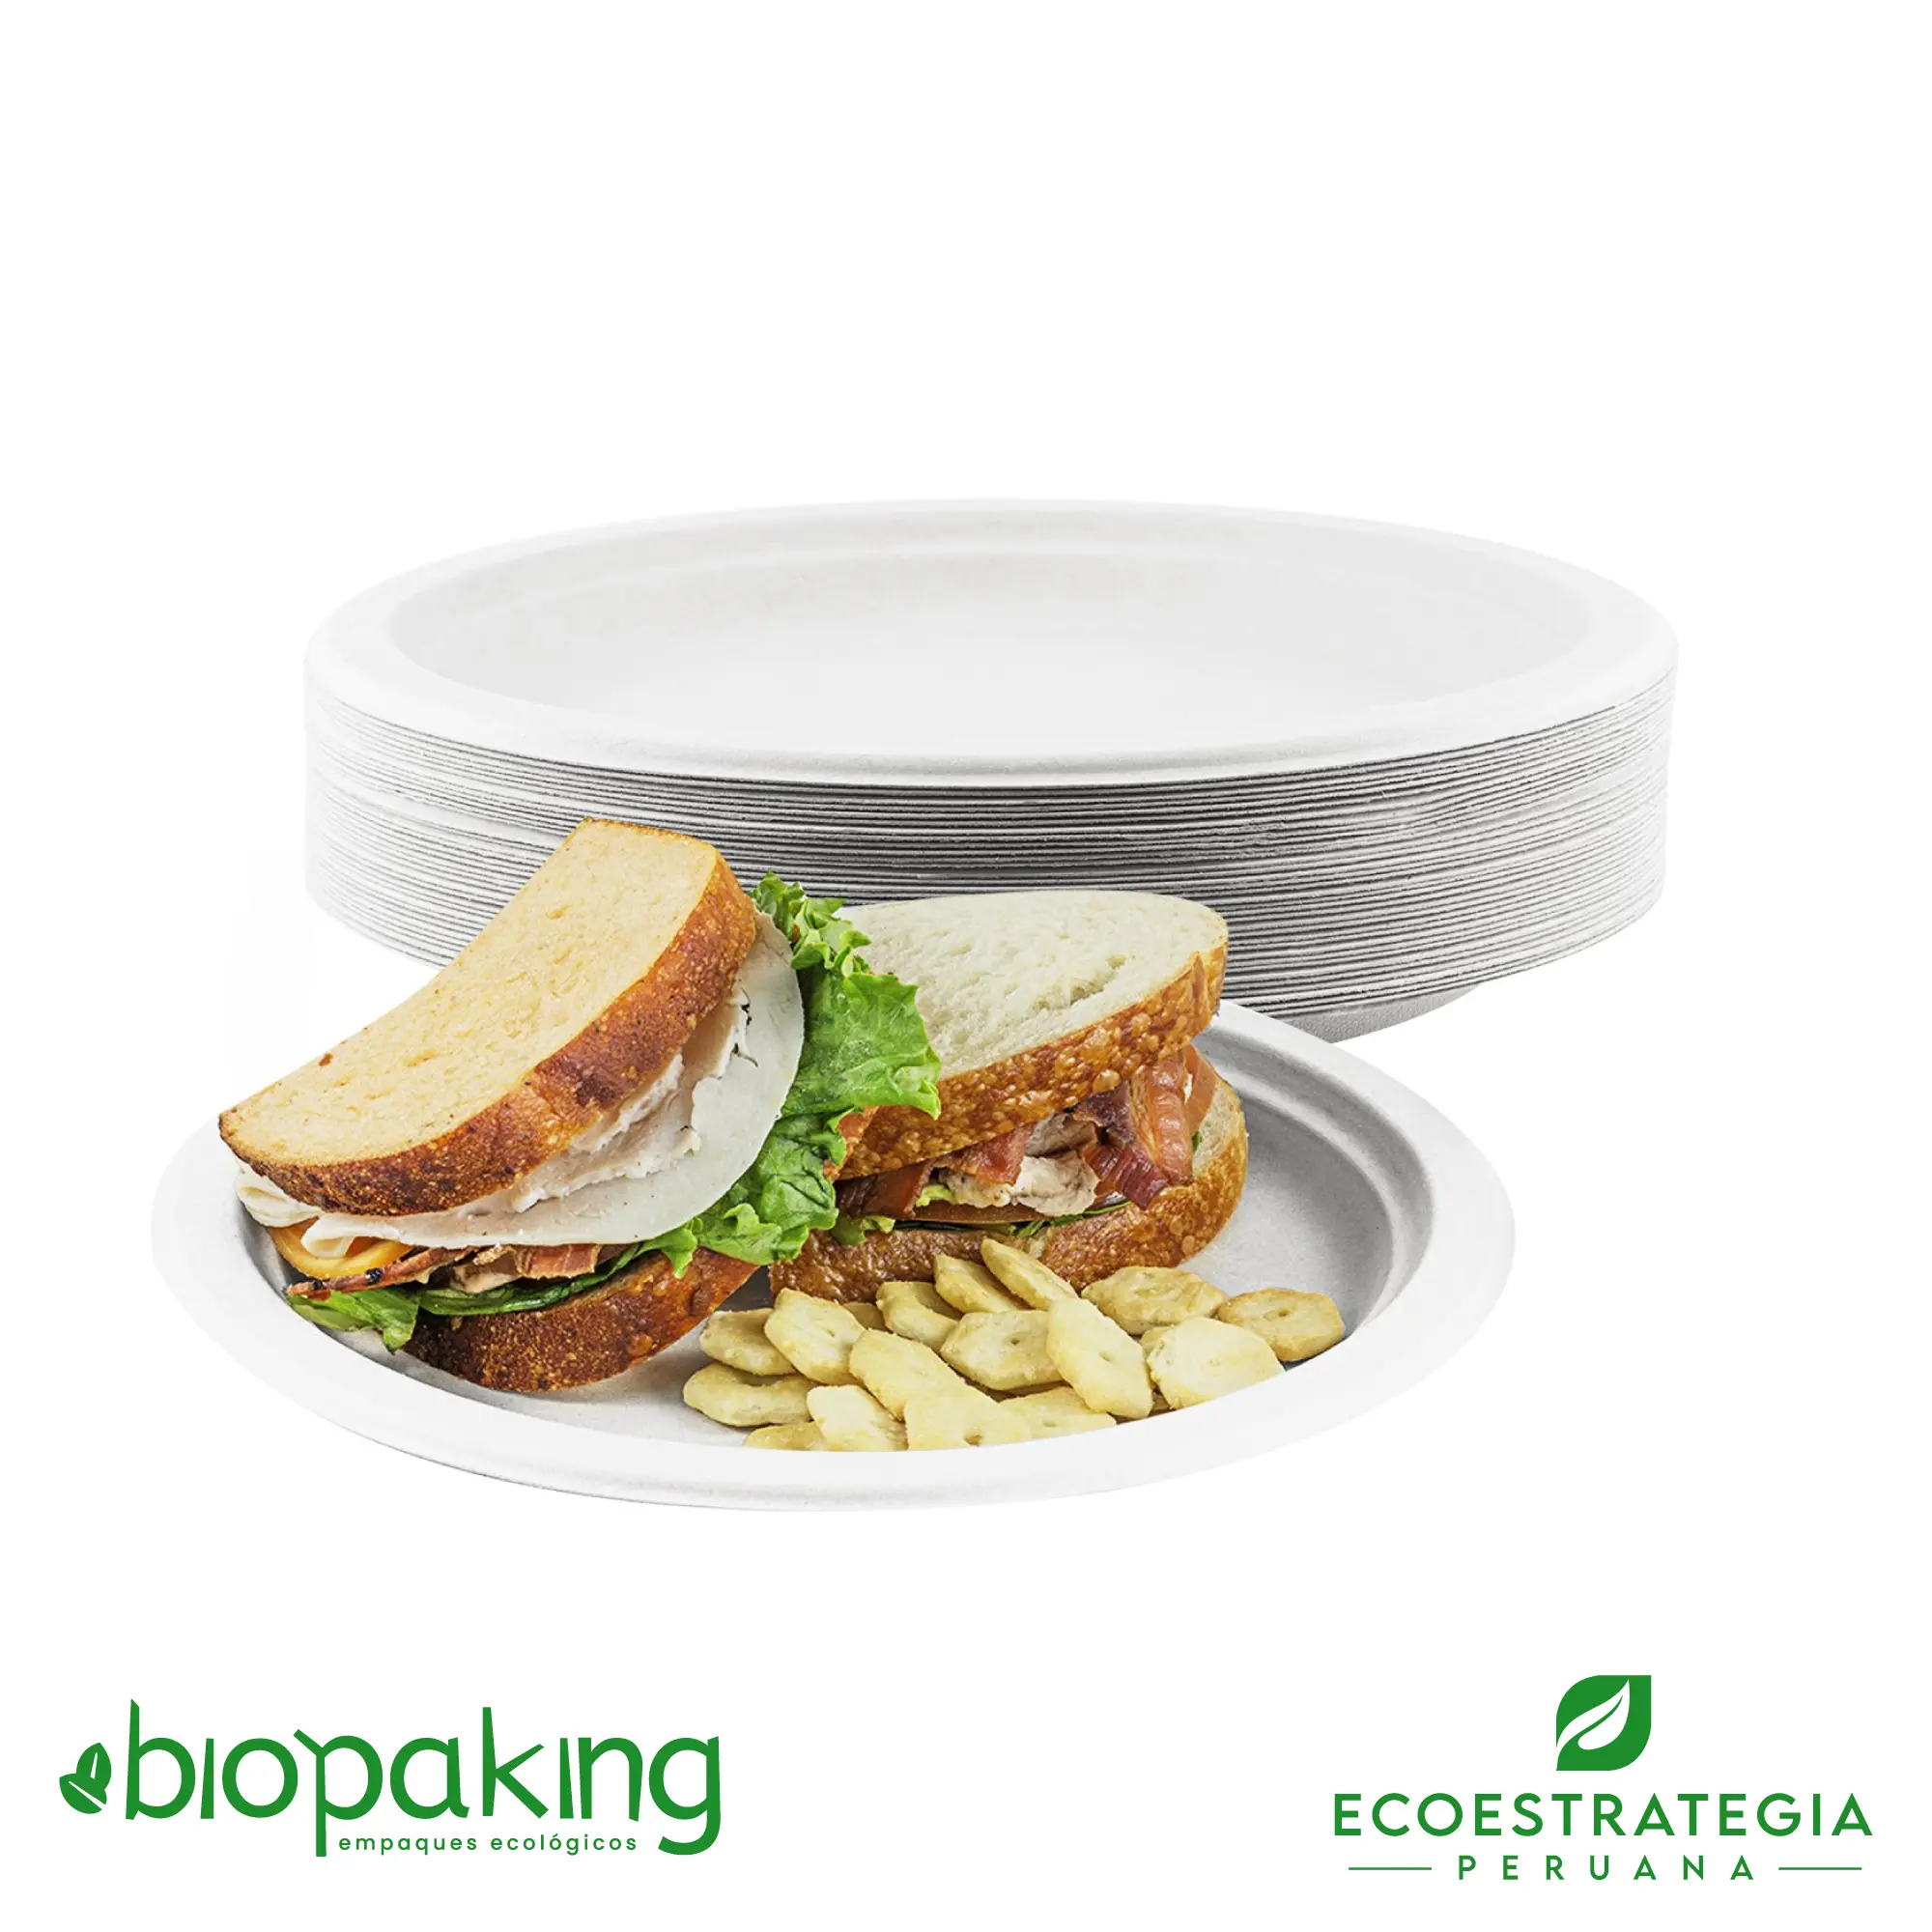 Es un plato biodegradable de 18 cm, fabricado a base de fibra de caña de azúcar. Apto para entradas, postres, tortas, hamburguesa y más. Contamos con stock de platos biodegradables, también los encuentras en las medidas. La mejor calidad en descartables biodegradables.